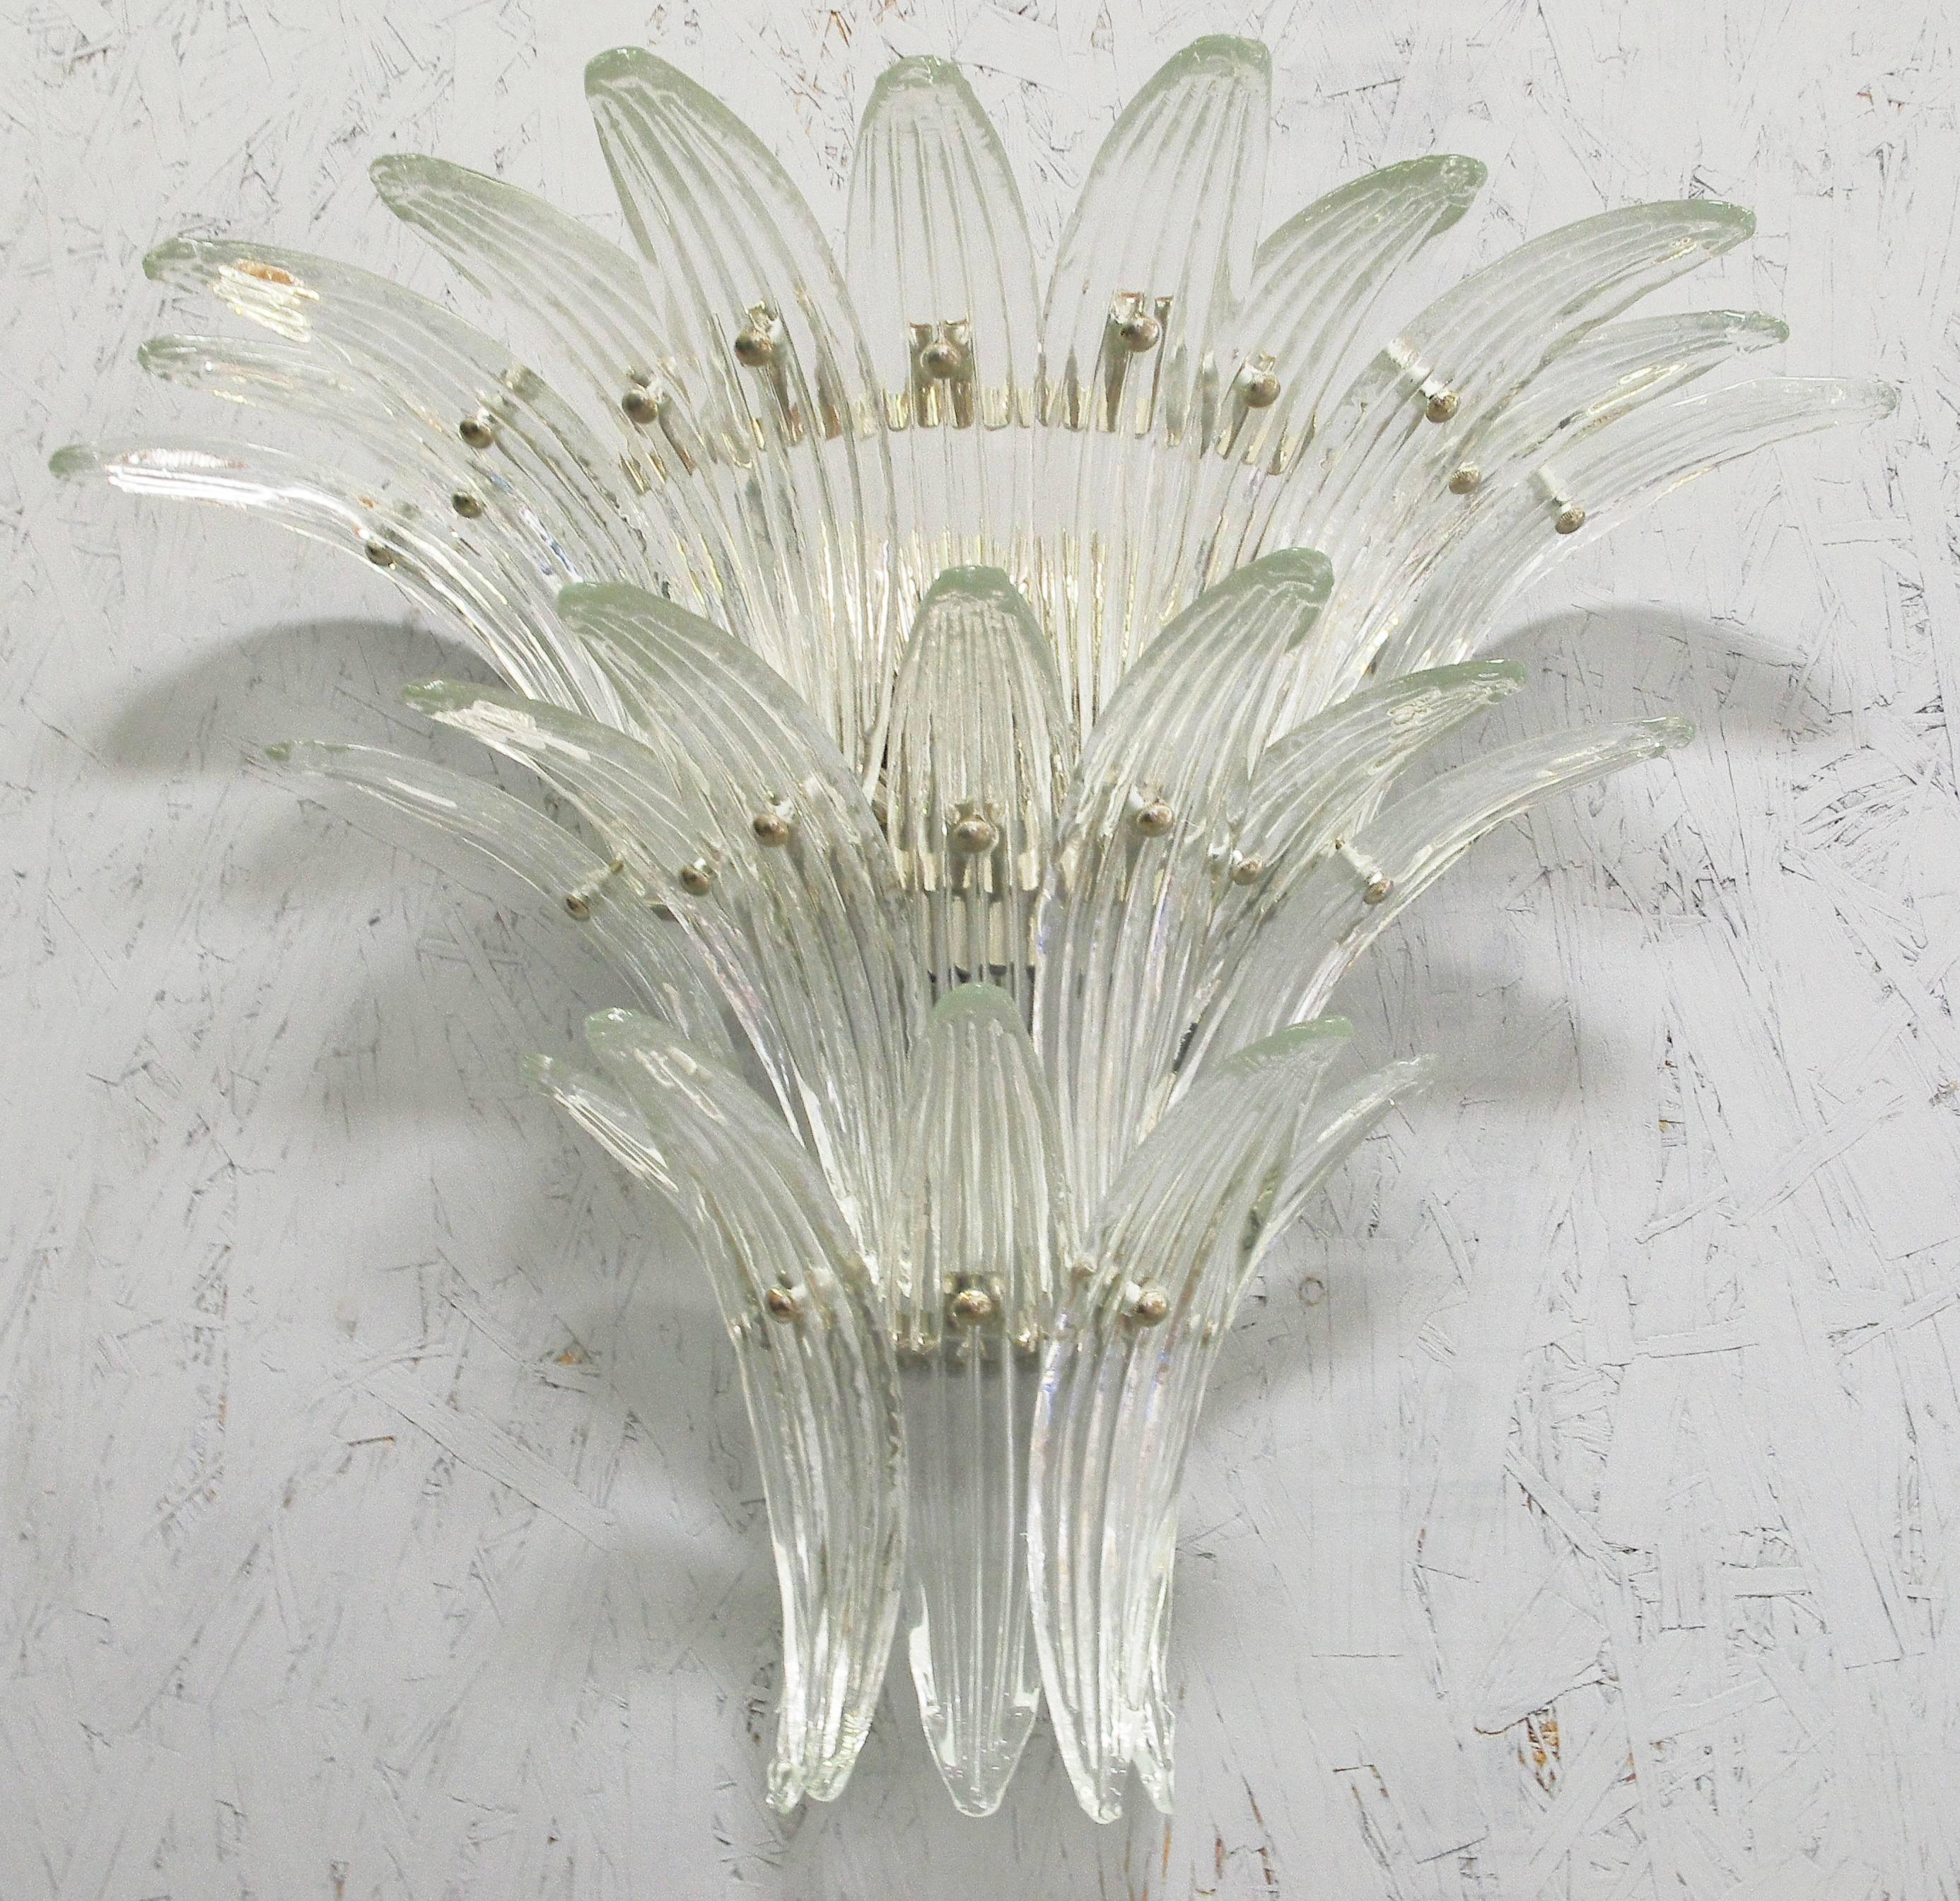 Italienische Palmette Wandleuchte mit 23 klaren Muranoglasblättern auf verchromtem Metallrahmen von Fabio Ltd / Made in Italy
3 Leuchten / Typ E12 oder E14 / je max. 40W
Höhe: 20 Zoll / Breite: 27 Zoll / Tiefe: 10 Zoll 
Bitte erkundigen Sie sich